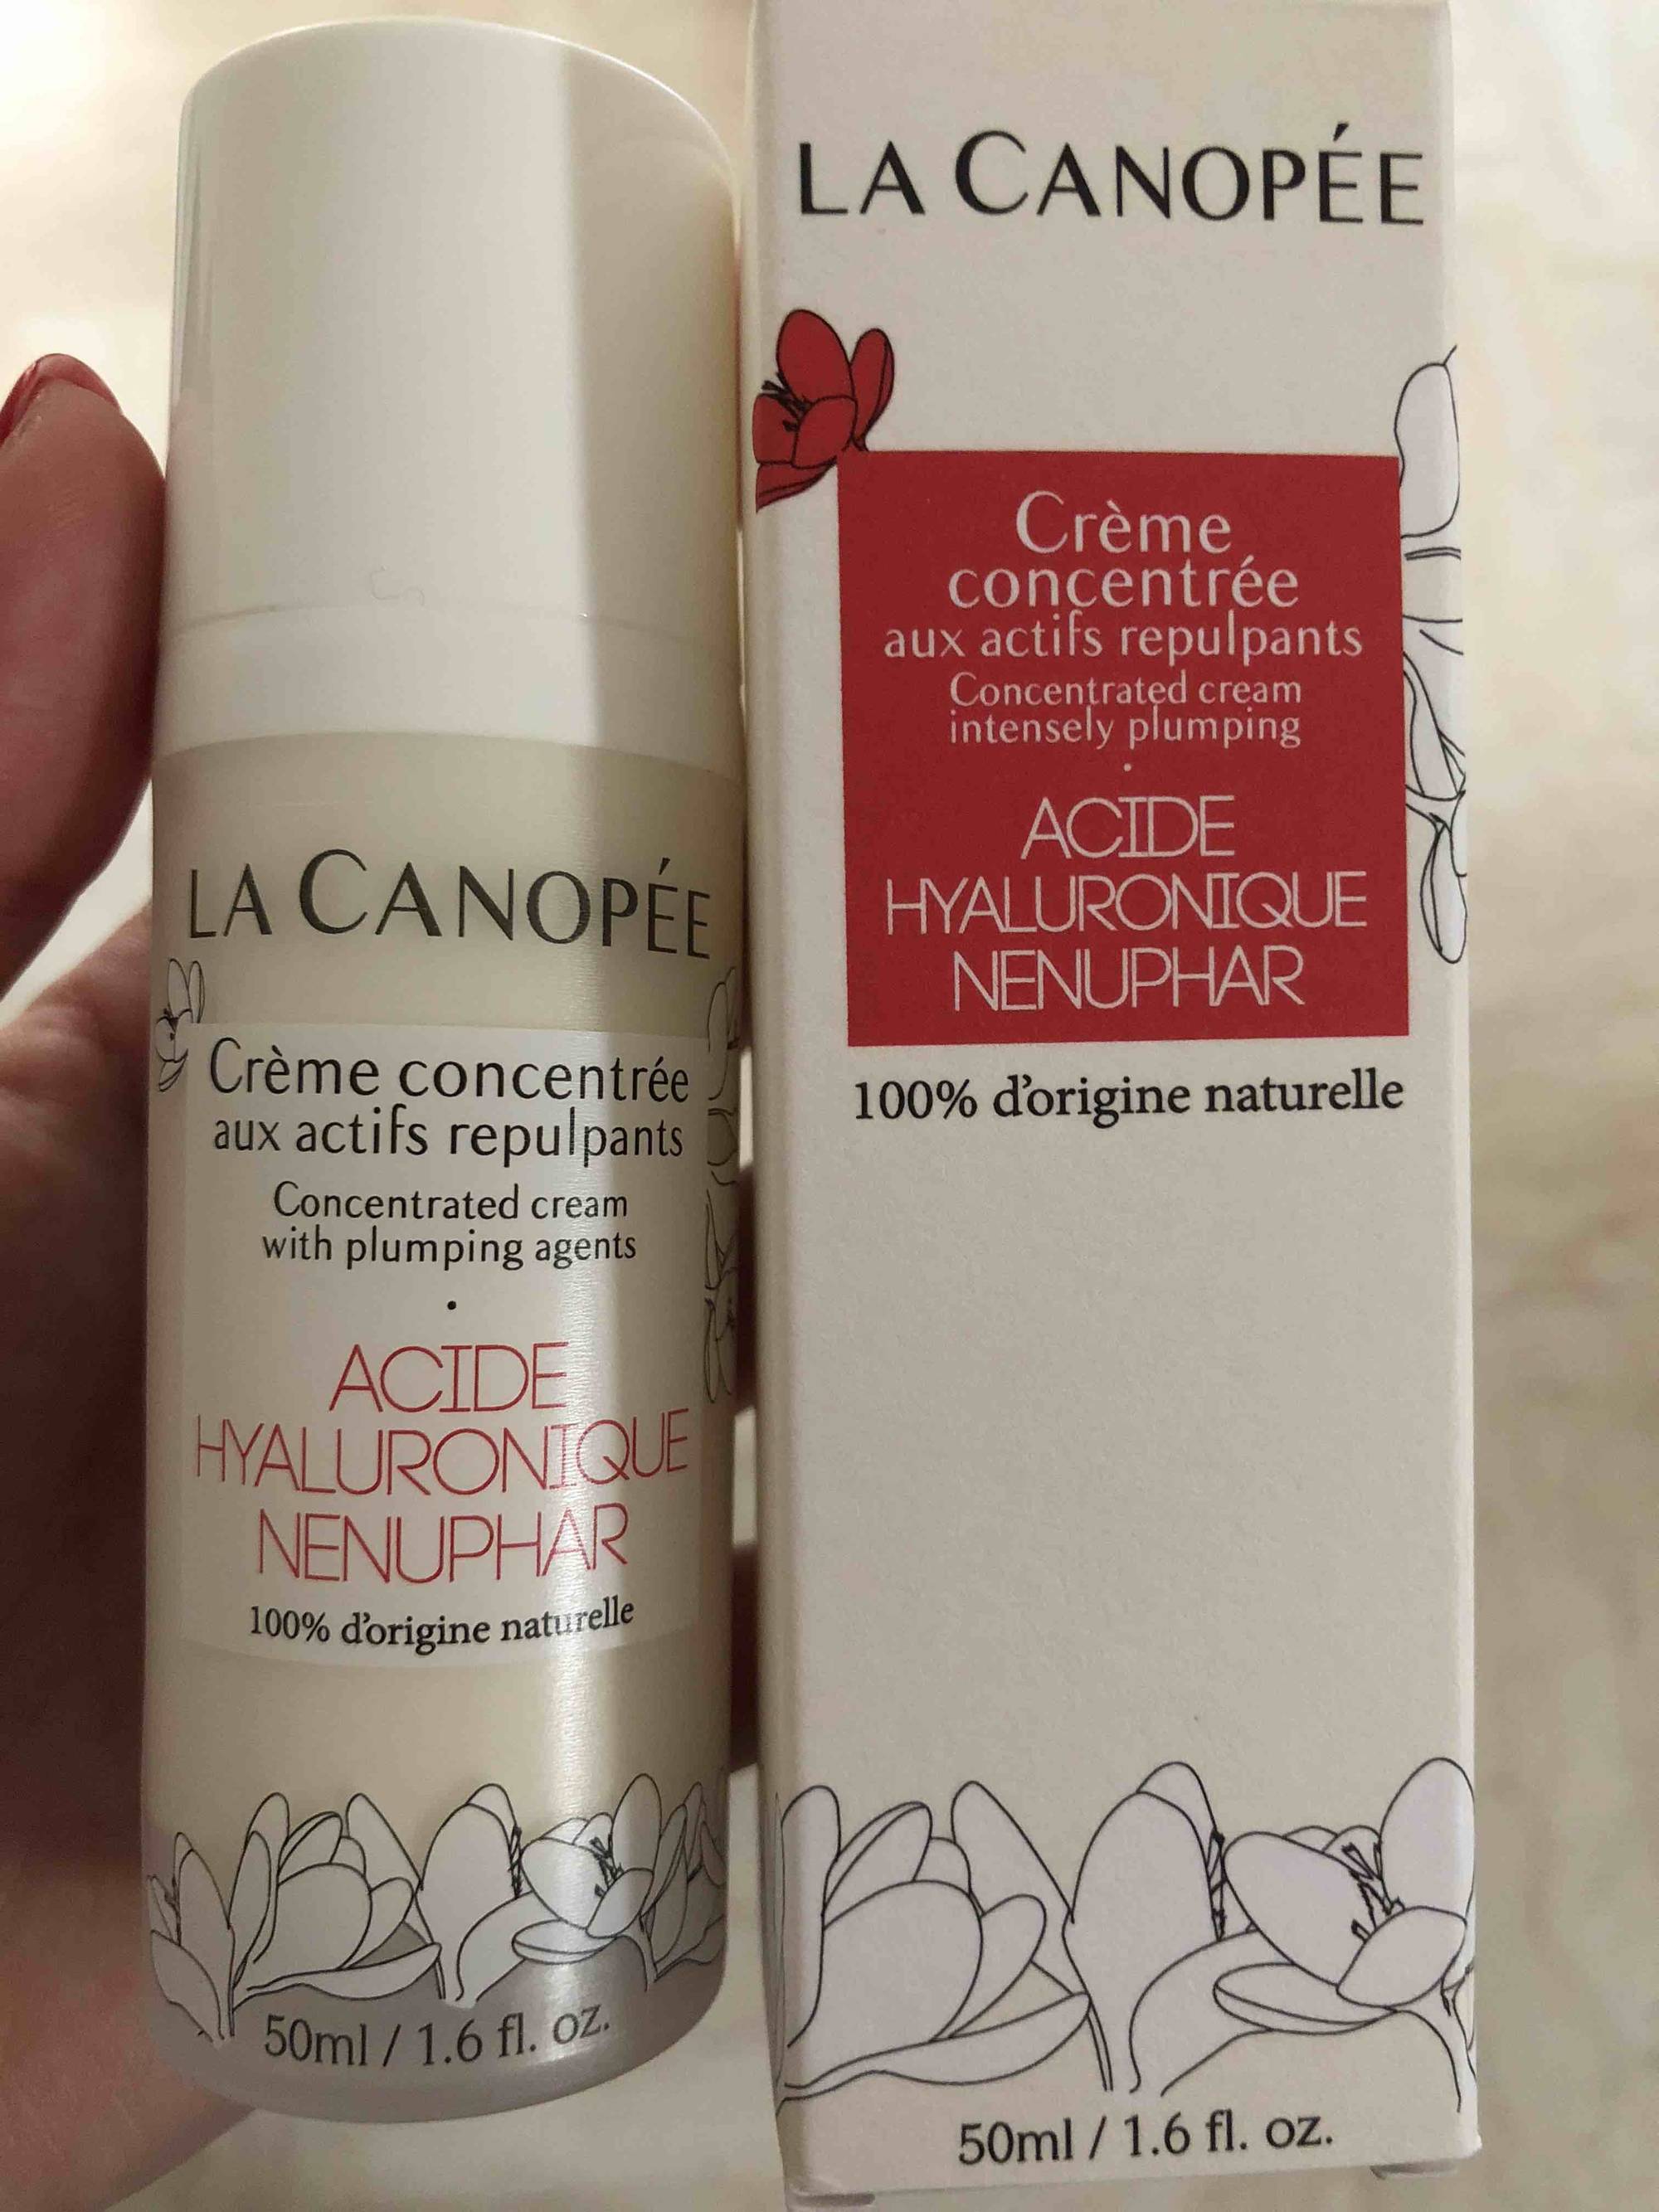 LA CANOPÉE - Acide hyaluronique nenuphar - Crème concentrée aux actifs repupants 